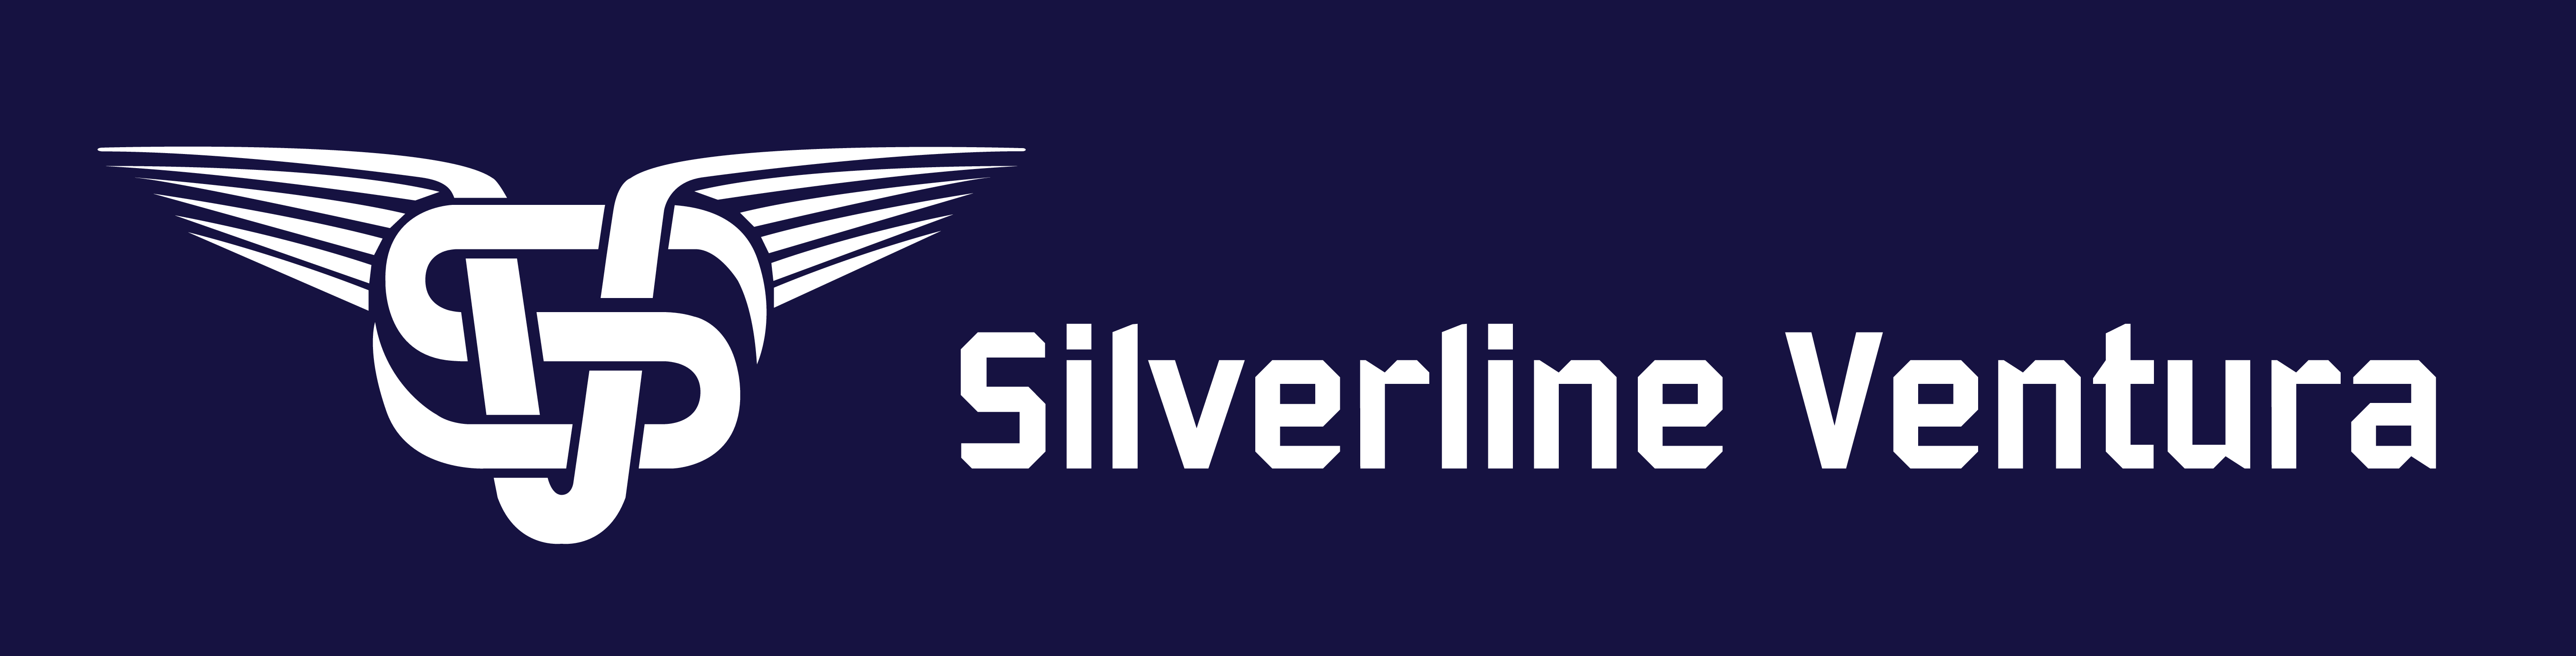 Silverline Ventura